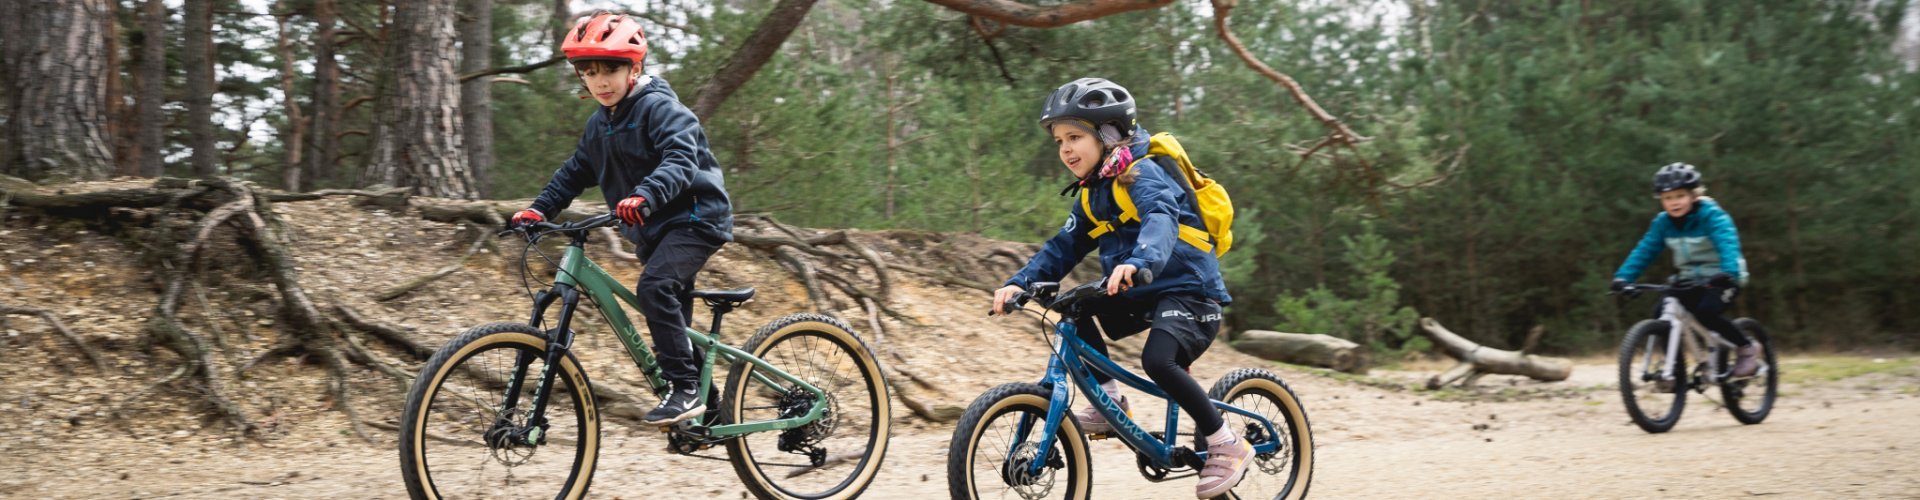 Drei Kinder fahren auf Kinder Mountainbikes von SUPURB und Specialized über einen Waldweg.